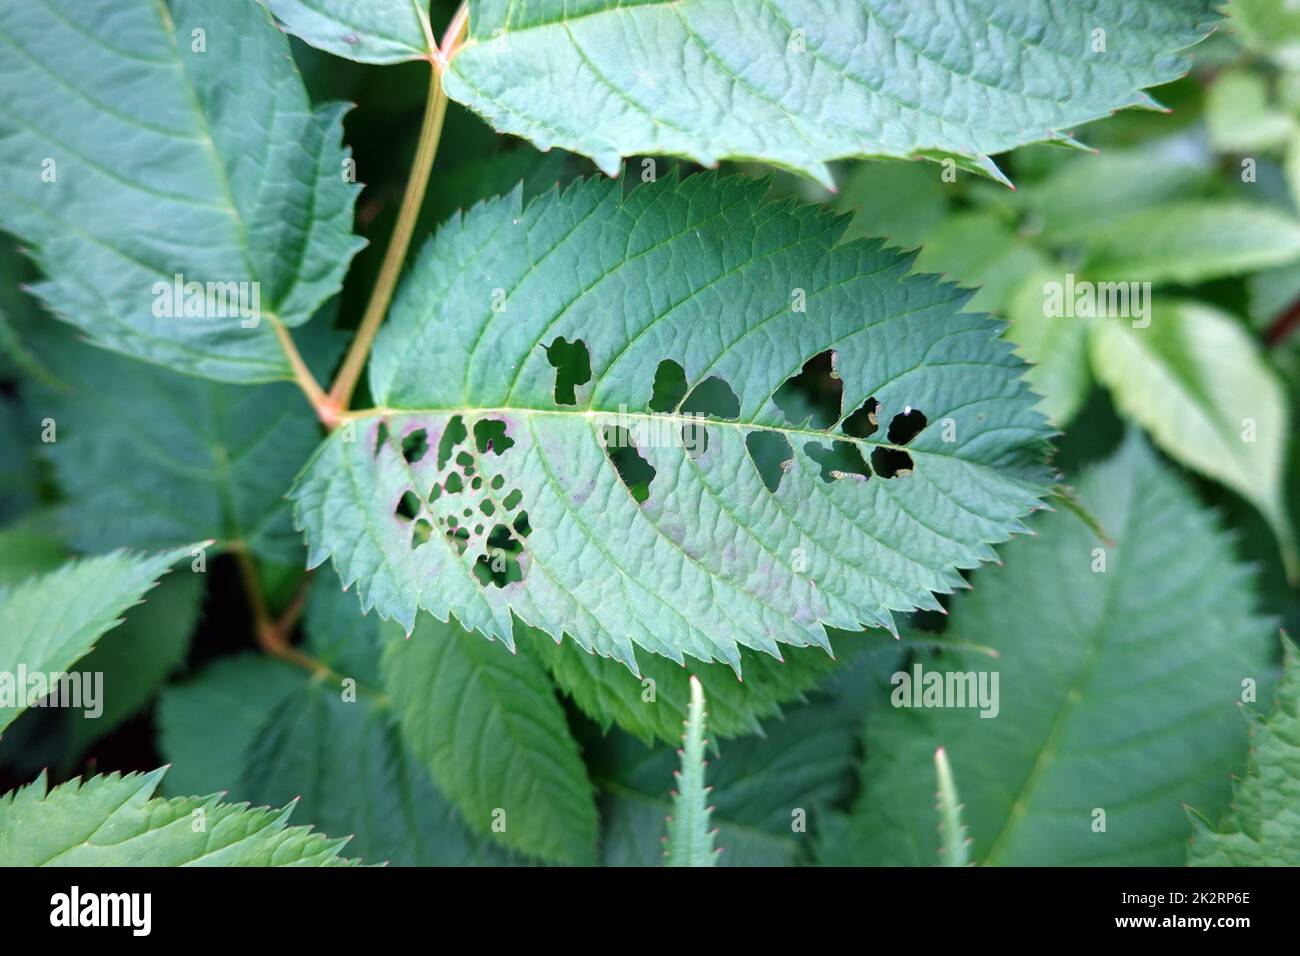 Blattspen-Larven (Tenthredinidae) fressen die BlÃ¤tter eines Wald-Geissbart (Aruncus dioicus) Foto Stock